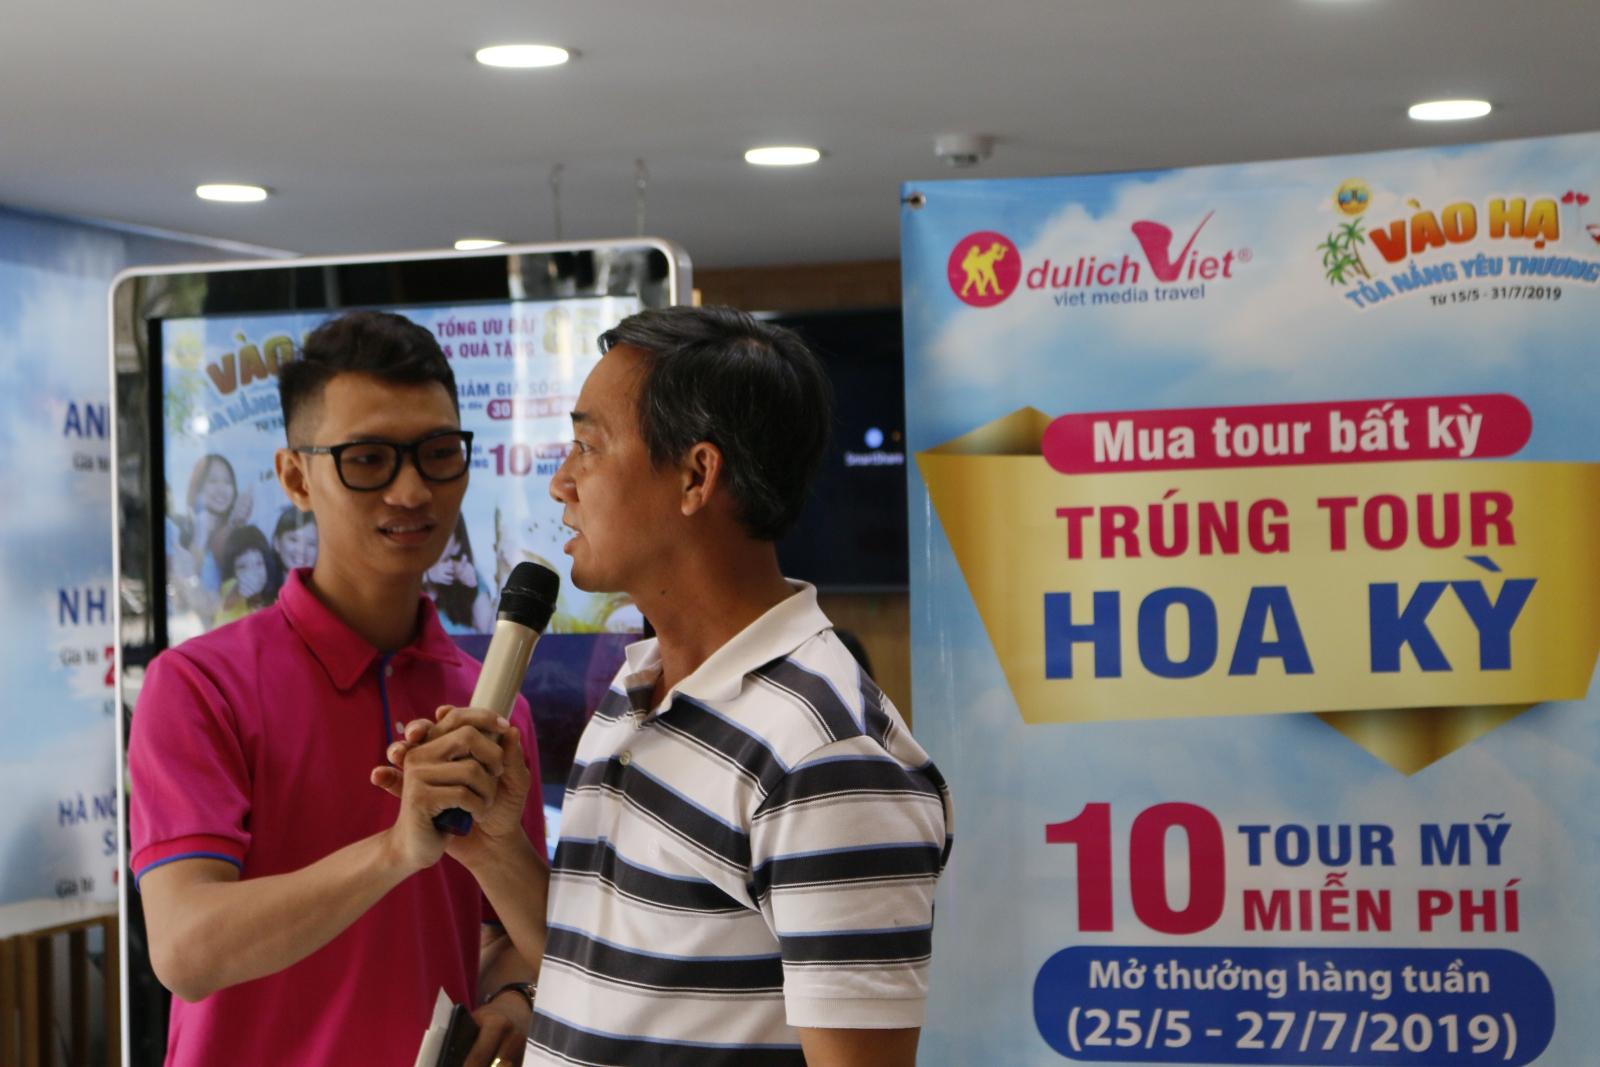 Tour Hoa kỳ tuần thứ III của Du Lịch Việt đã có chủ sở hữu